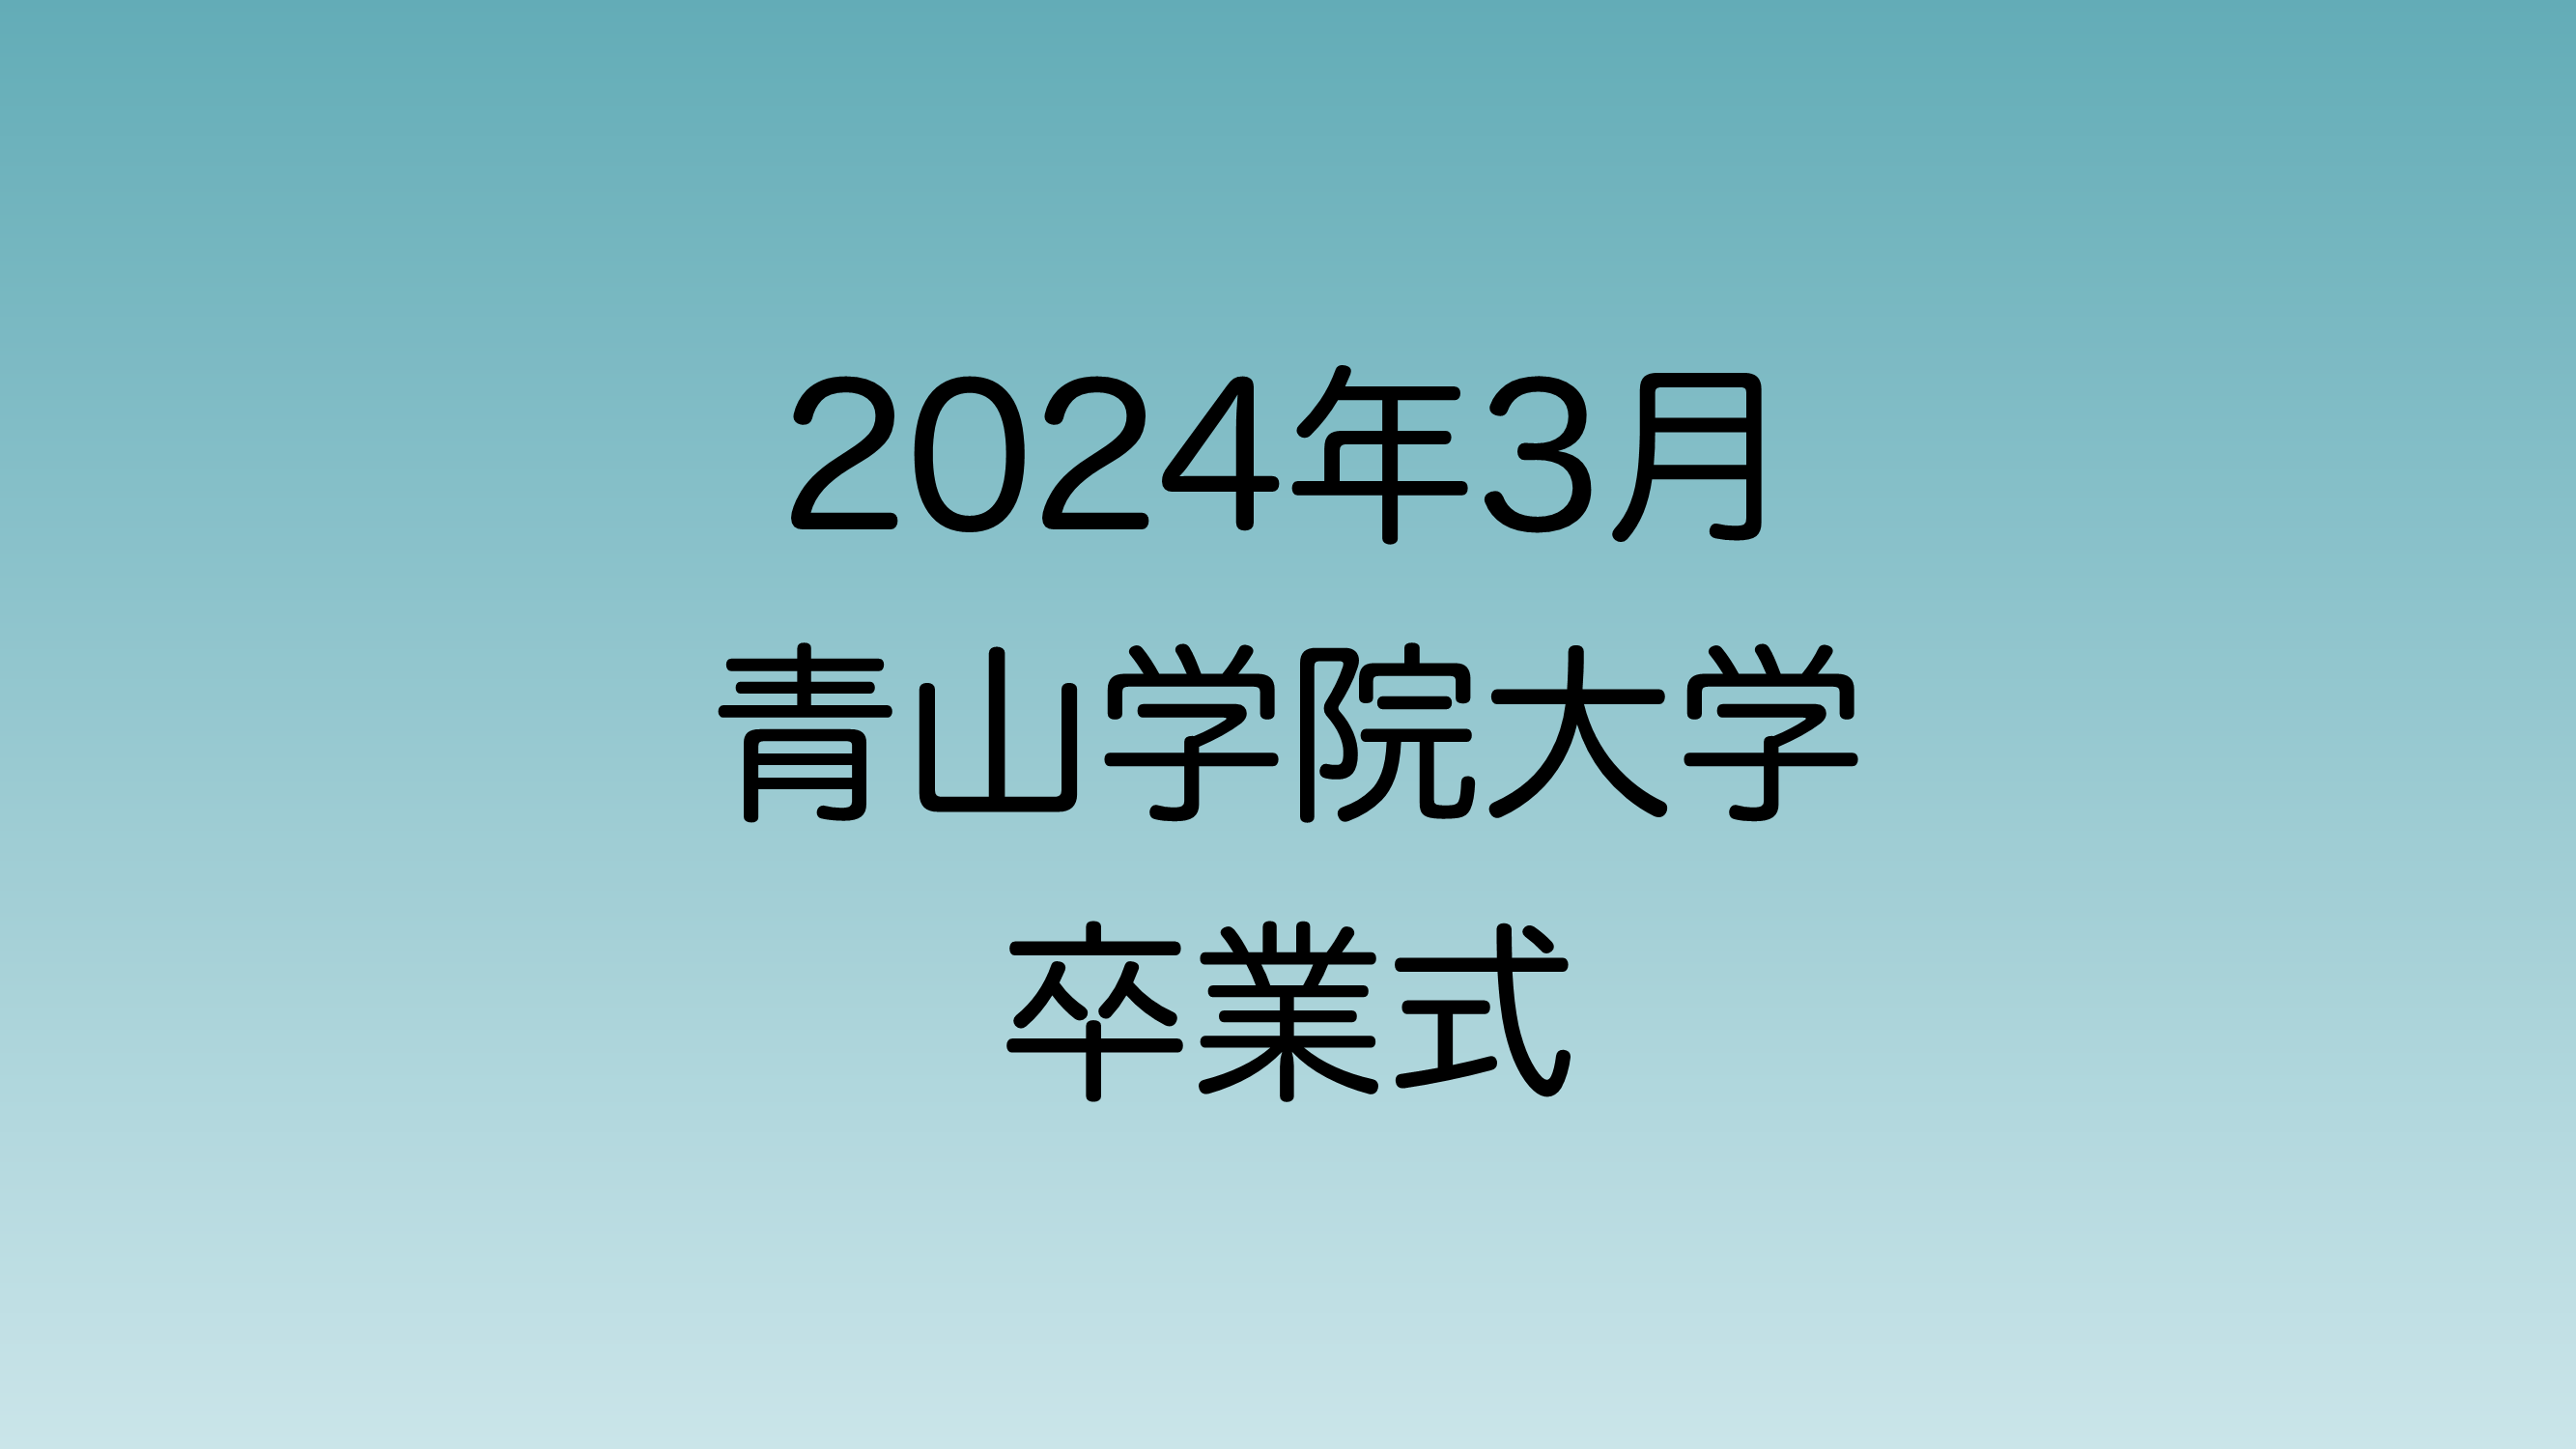 2024年3月に行われる青山学院卒業式について